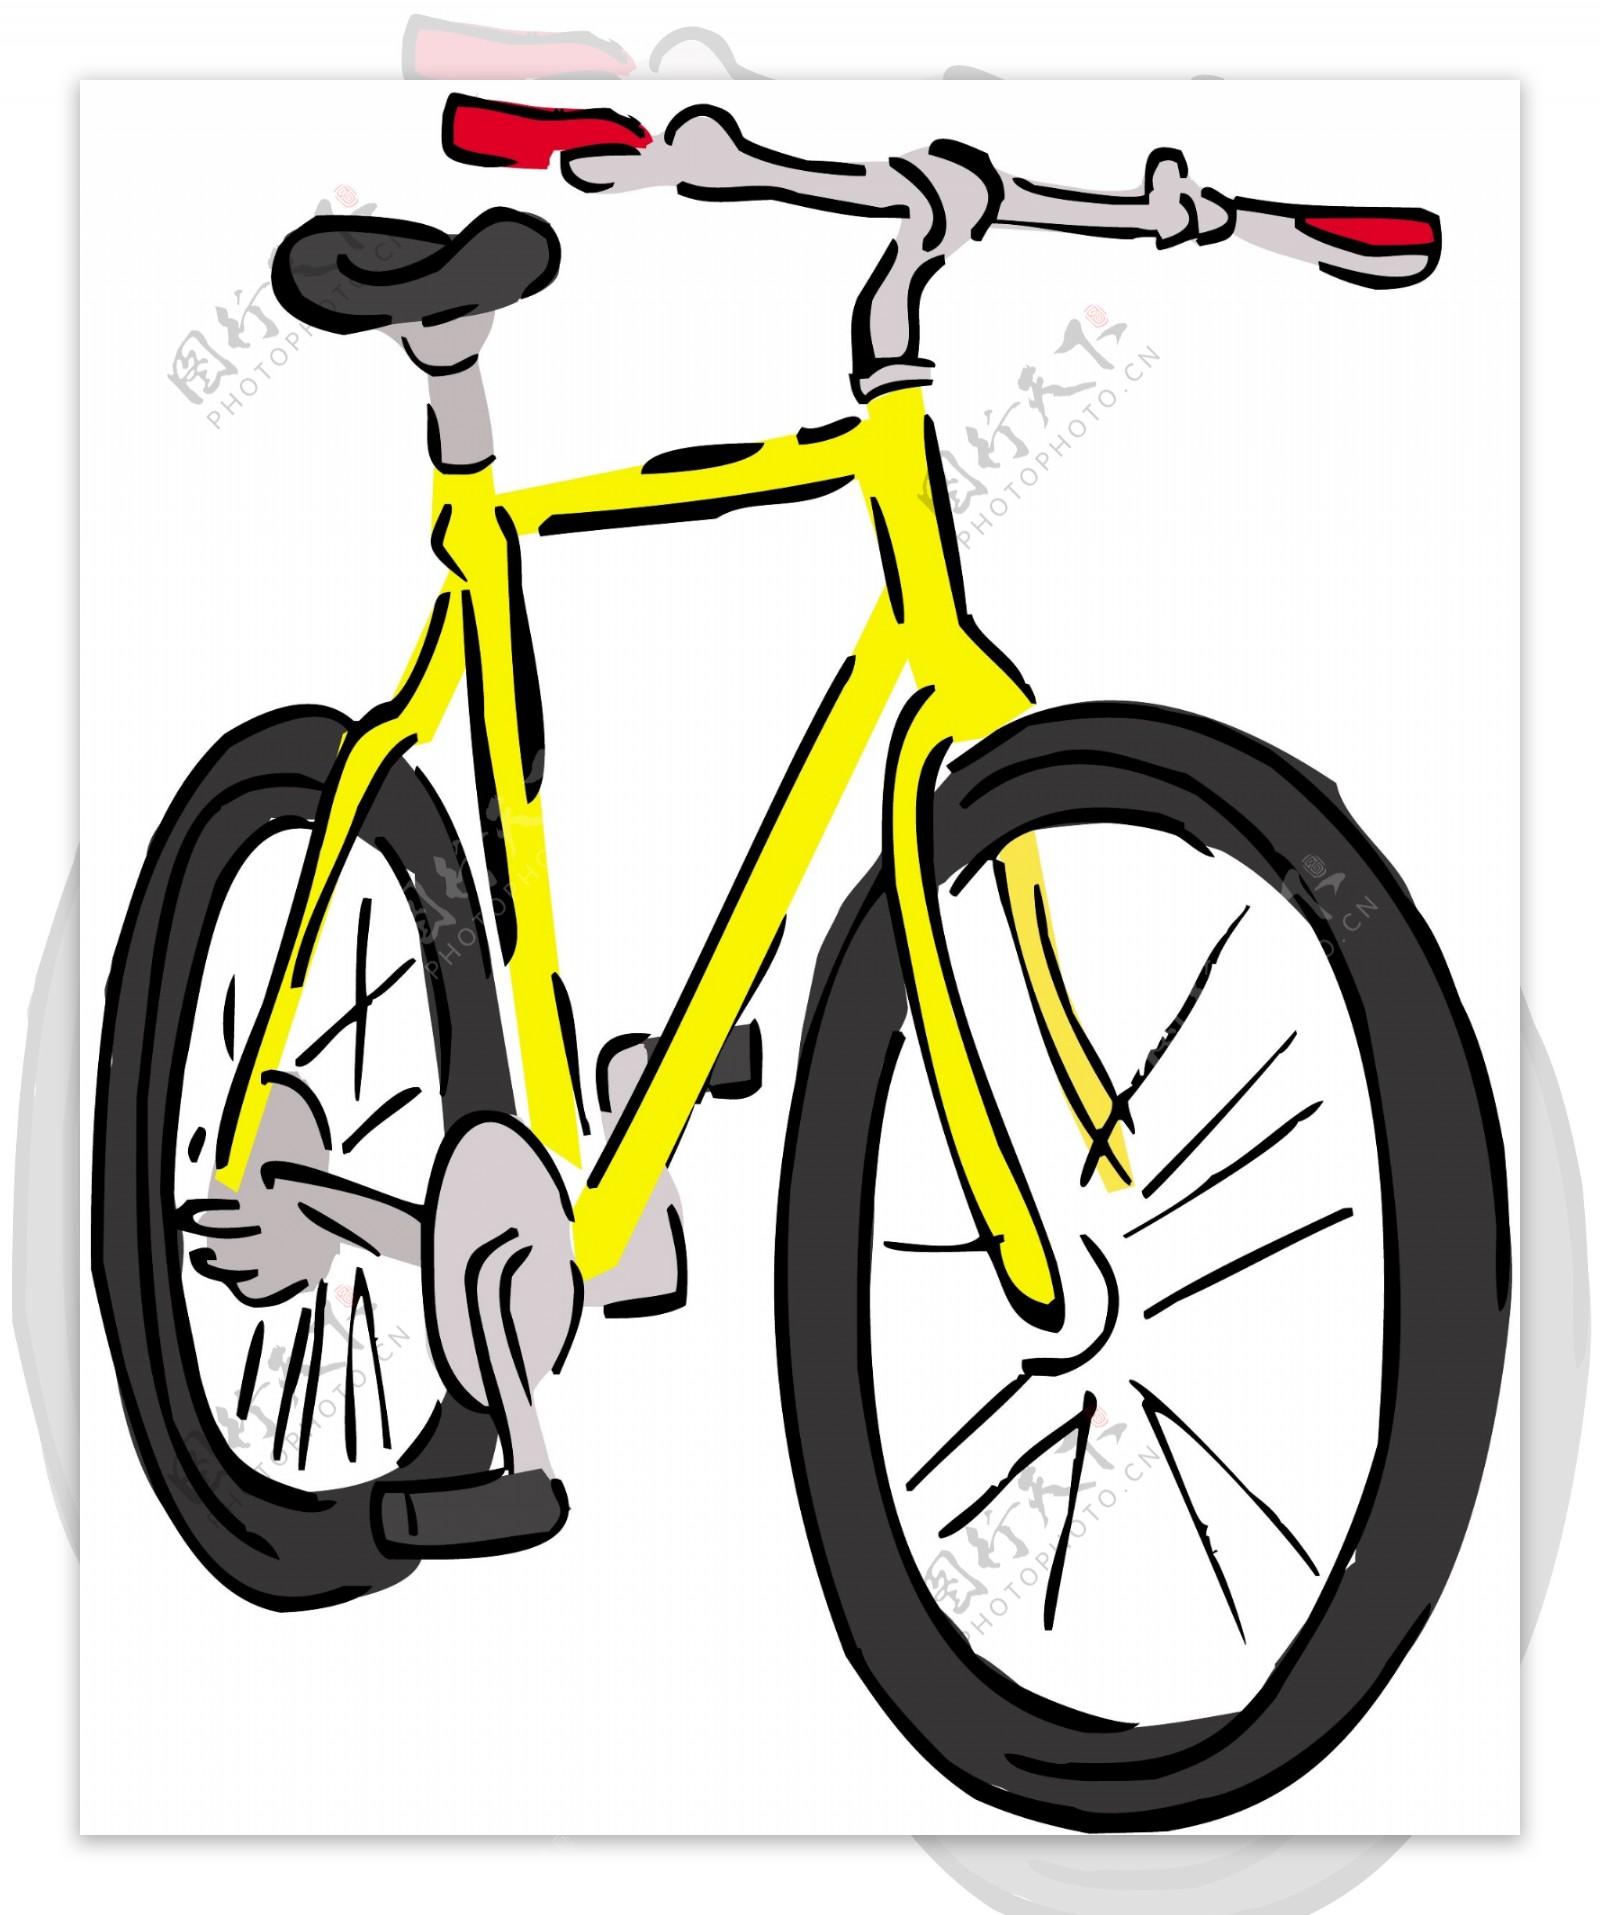 自行车交通工具矢量素材EPS格式0058